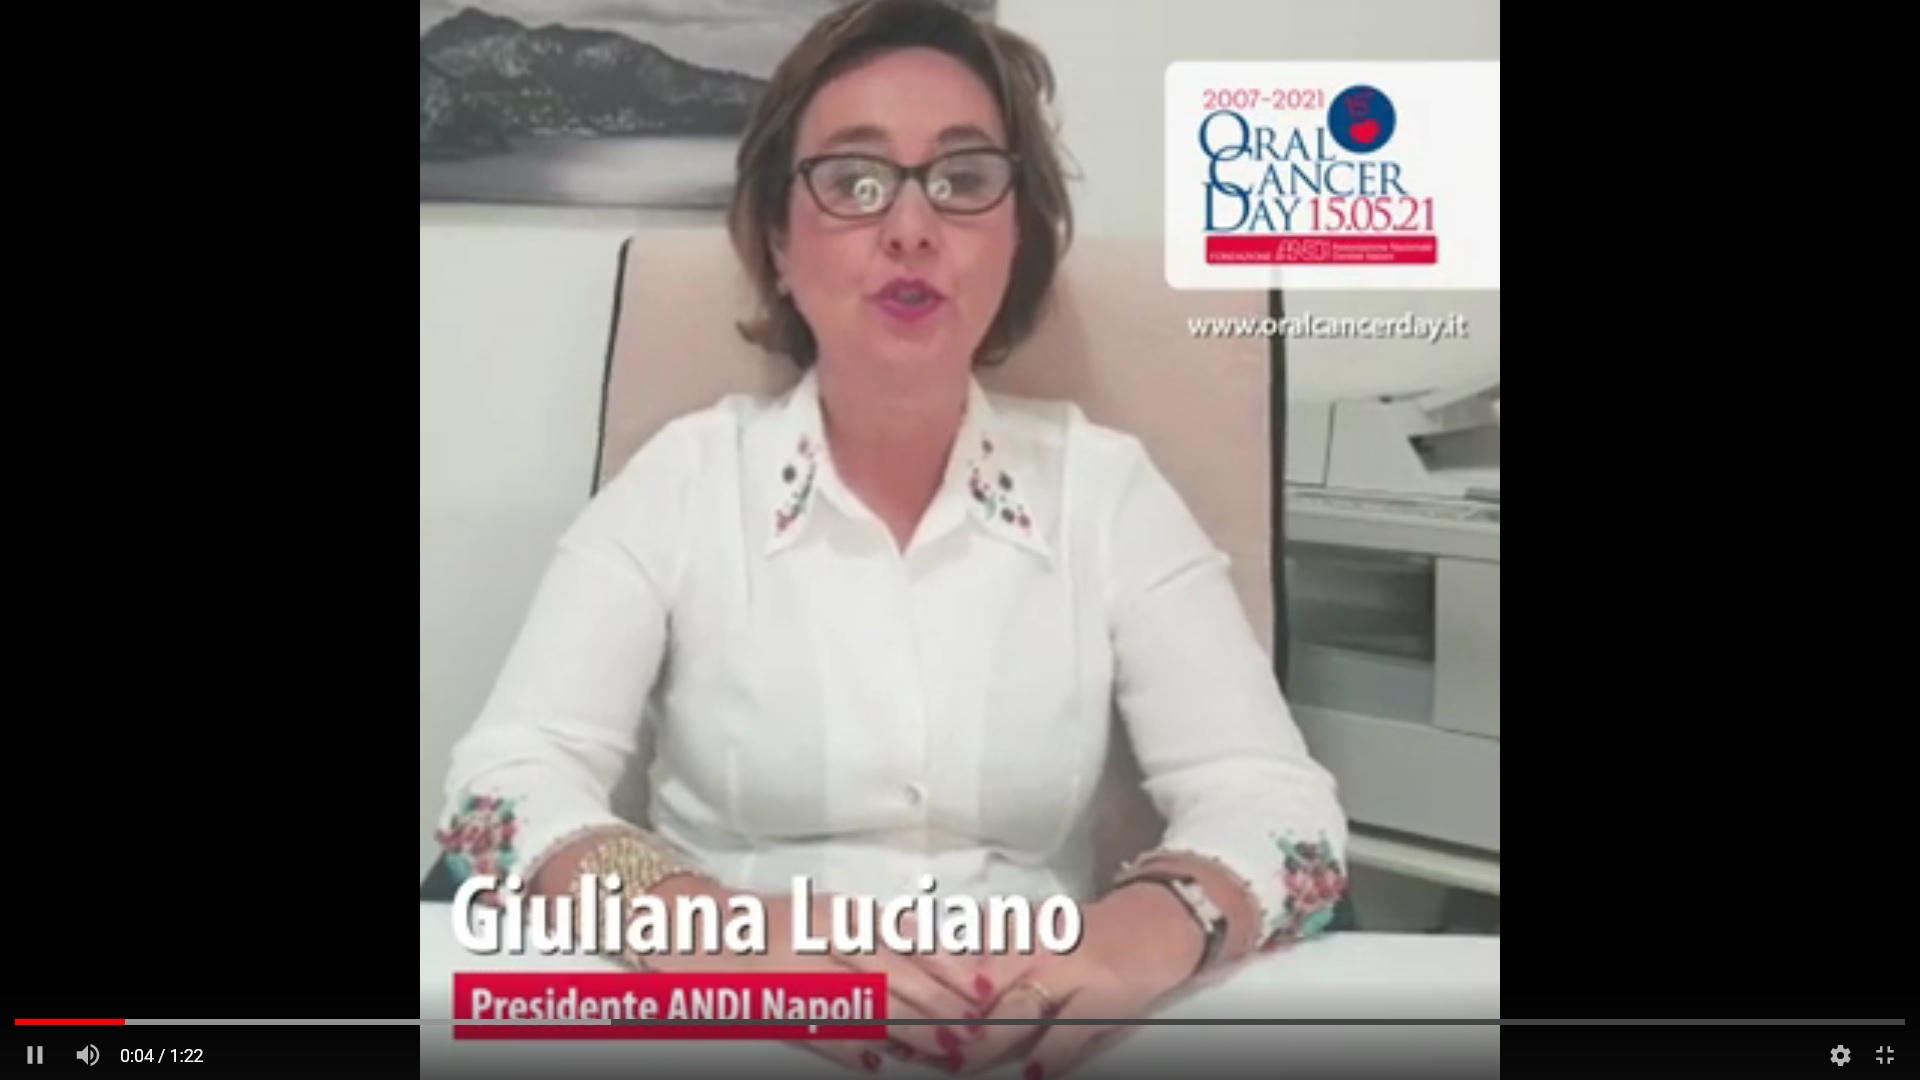 screen luciano Video appello OCD 2021 - Giuliana Luciano